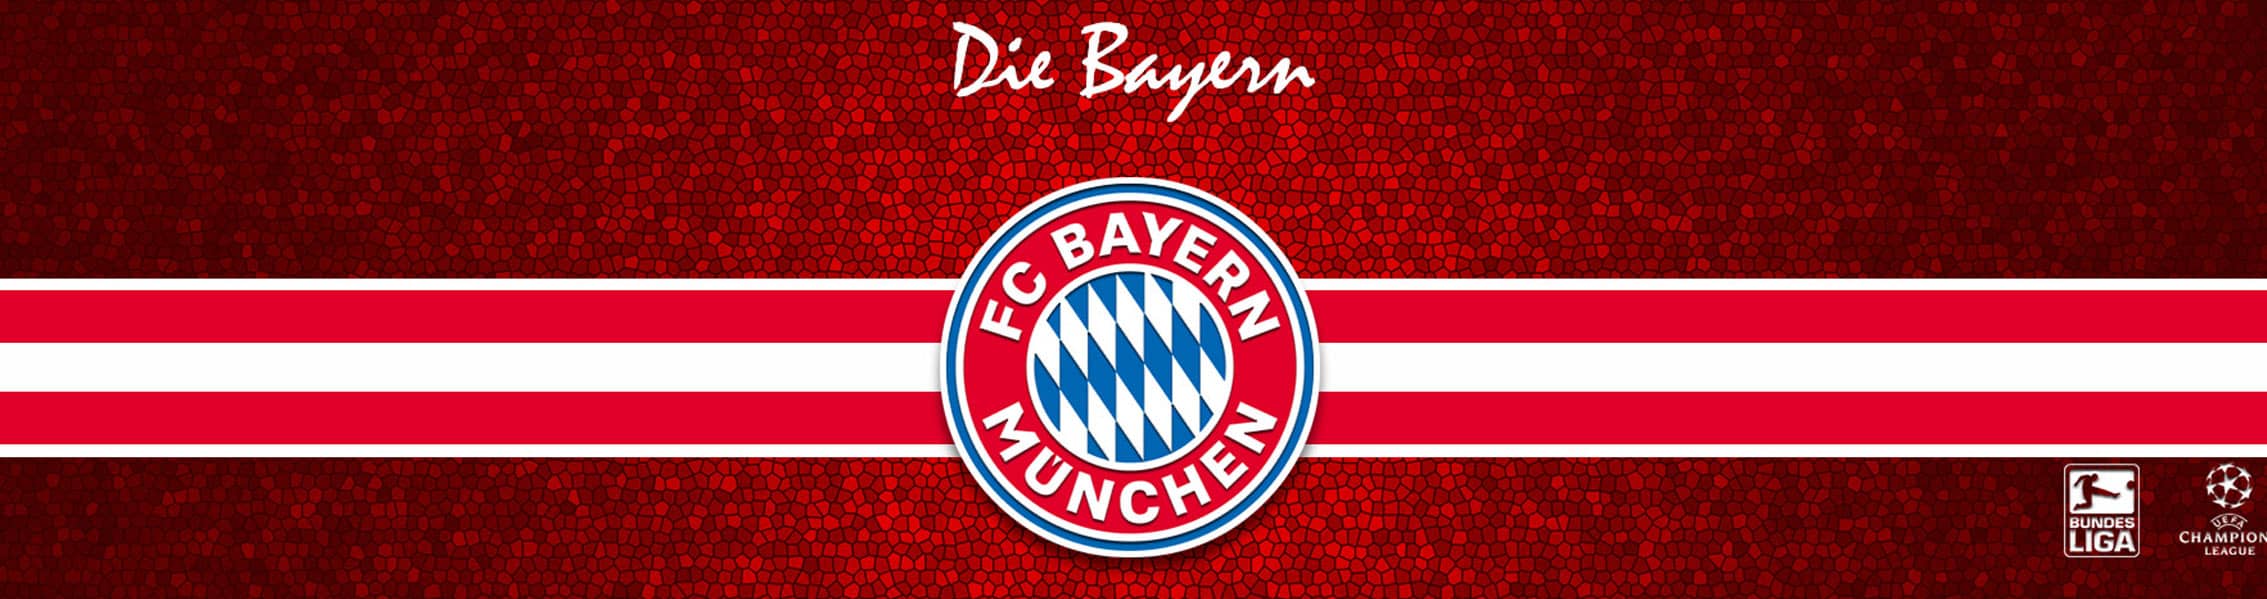 خرید محصولات بایرن مونیخ (Bayern Munich)